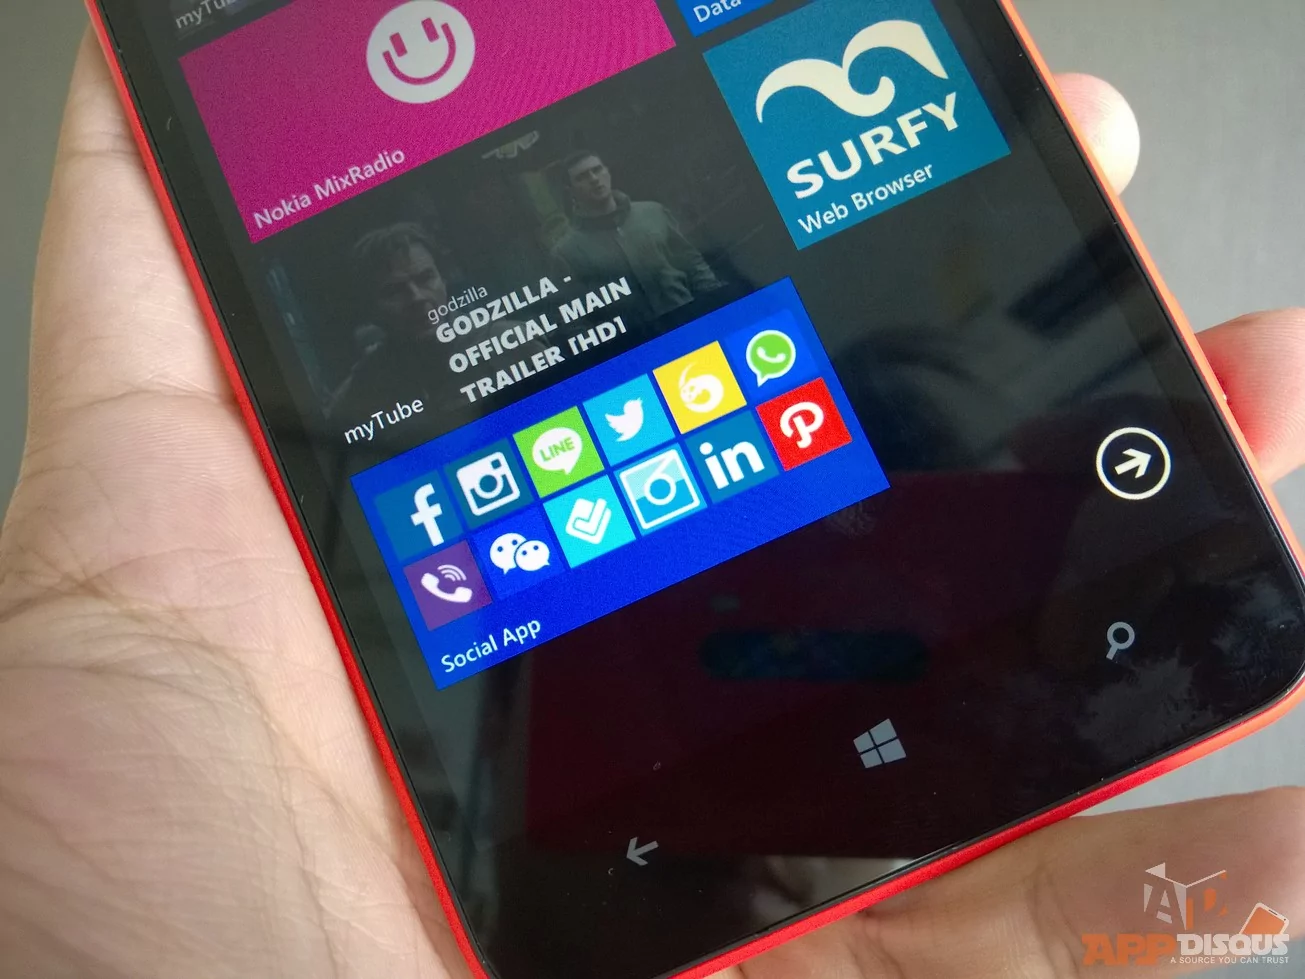 Social App for Nokia Lumia | Nokia Lumia 1320 | การรองรับ Social Network บน Nokia Lumia 1320 ถึงไม่สมบูรณ์แบบแต่ครบครันสำหรับการใช้งานพื้นฐาน